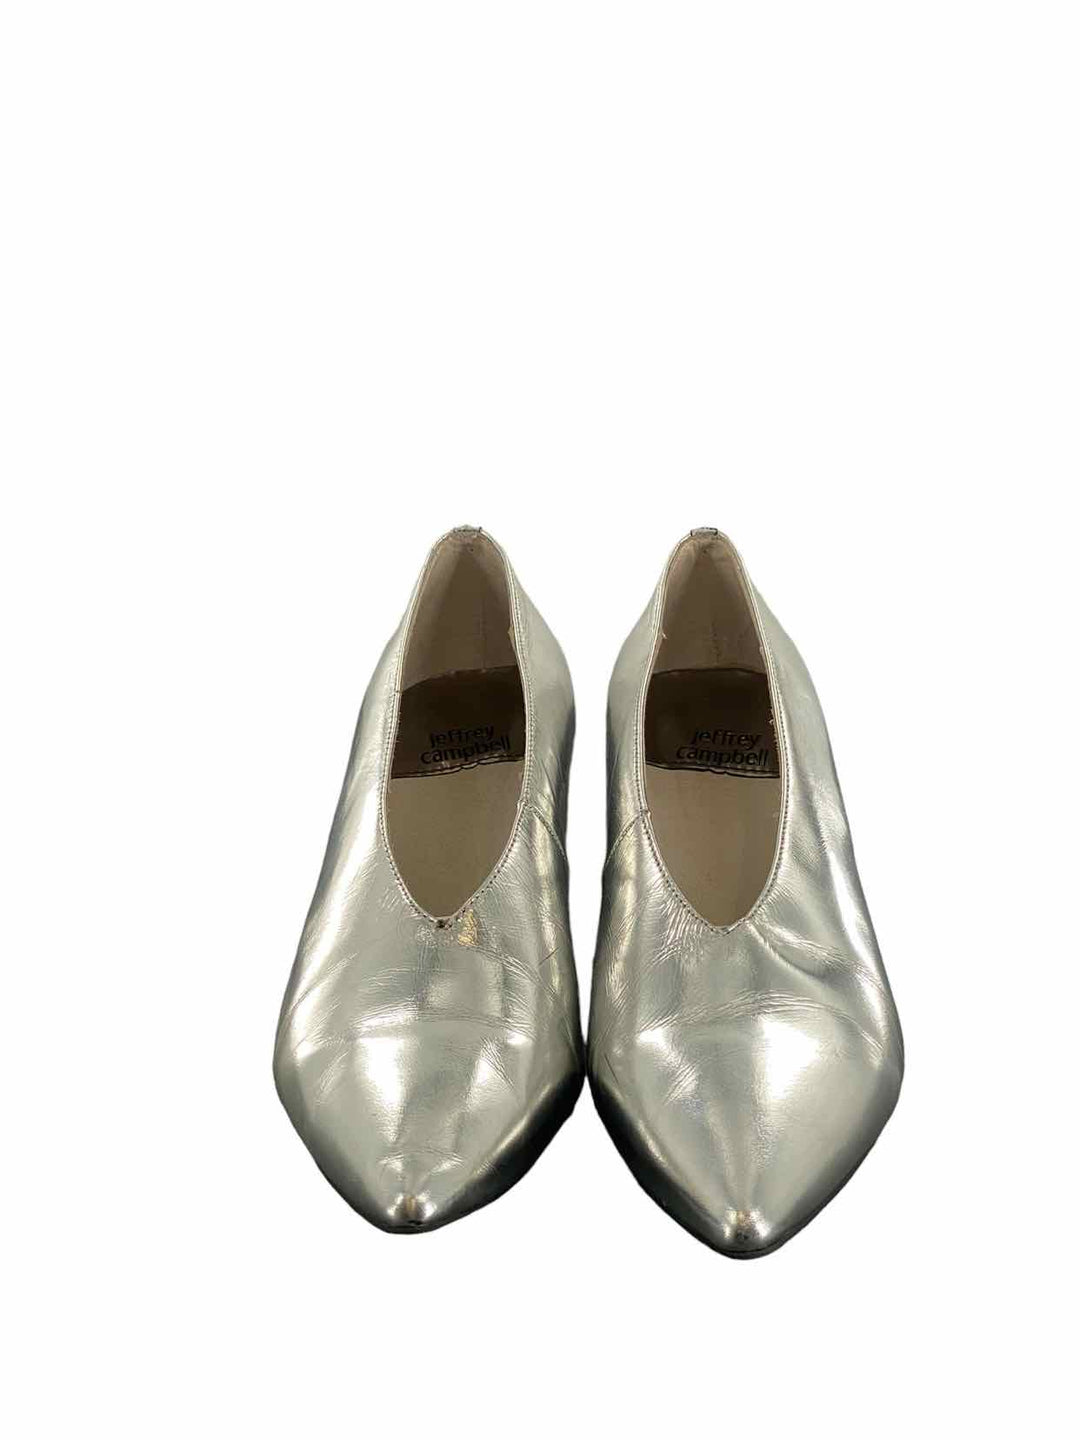 Jeffrey Campbell Shoe Size 8 Silver Heels